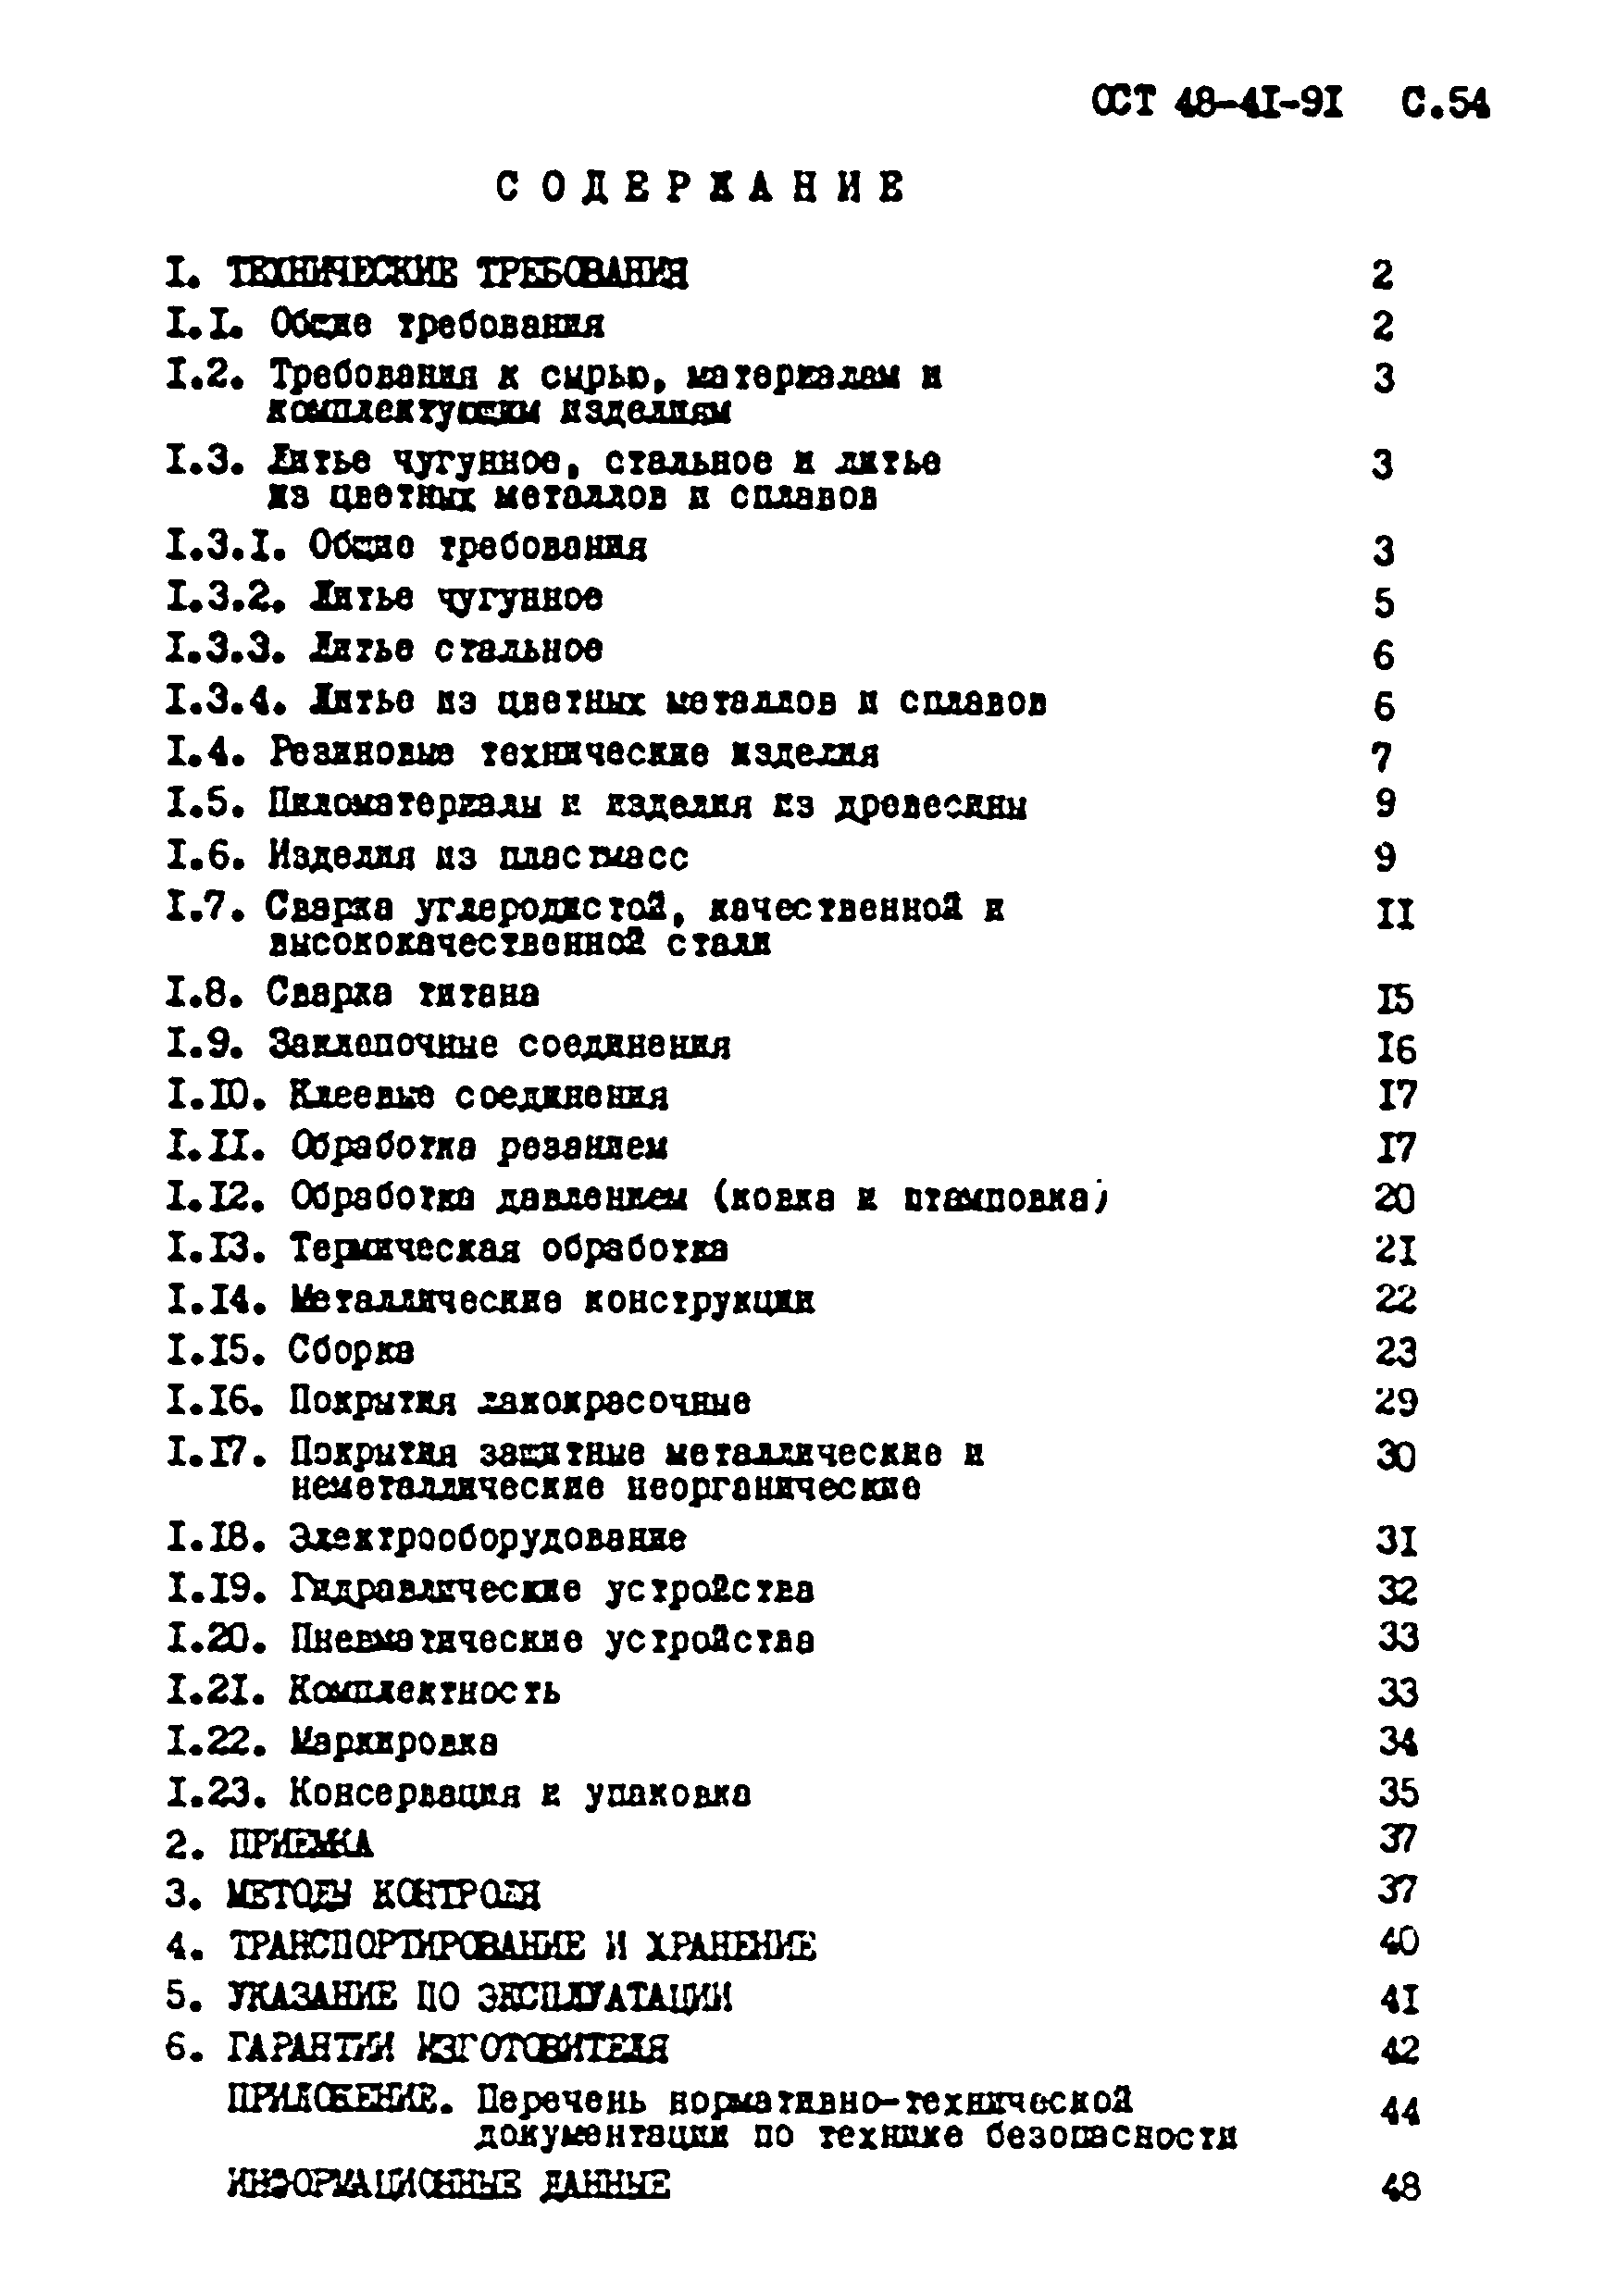 ОСТ 48-41-91